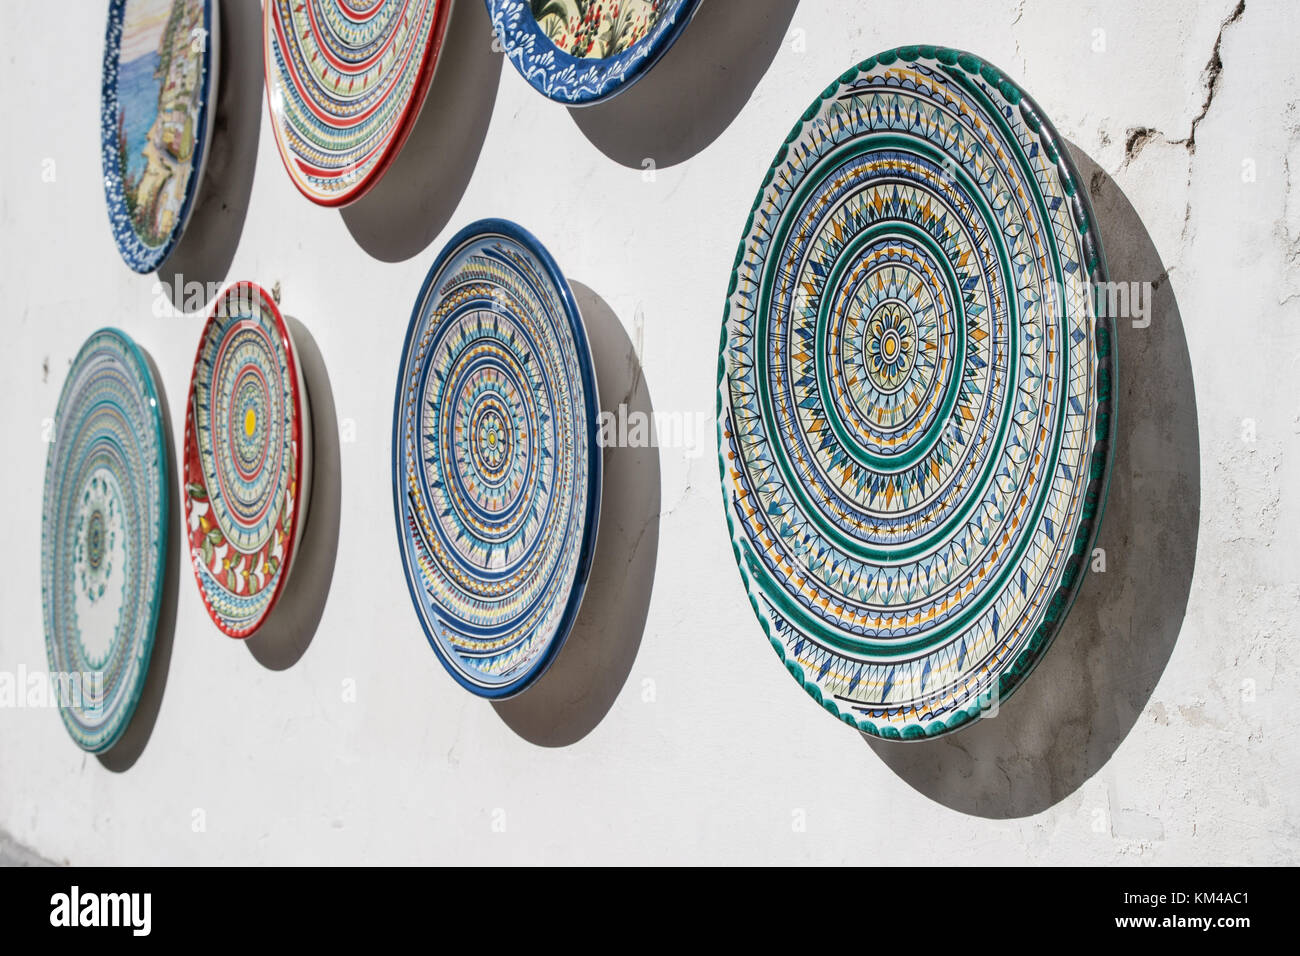 Varie ceramiche decorate piatti appeso per la vendita al di fuori di un negozio di souvenir a costiera amalfitana, Italia. Foto Stock